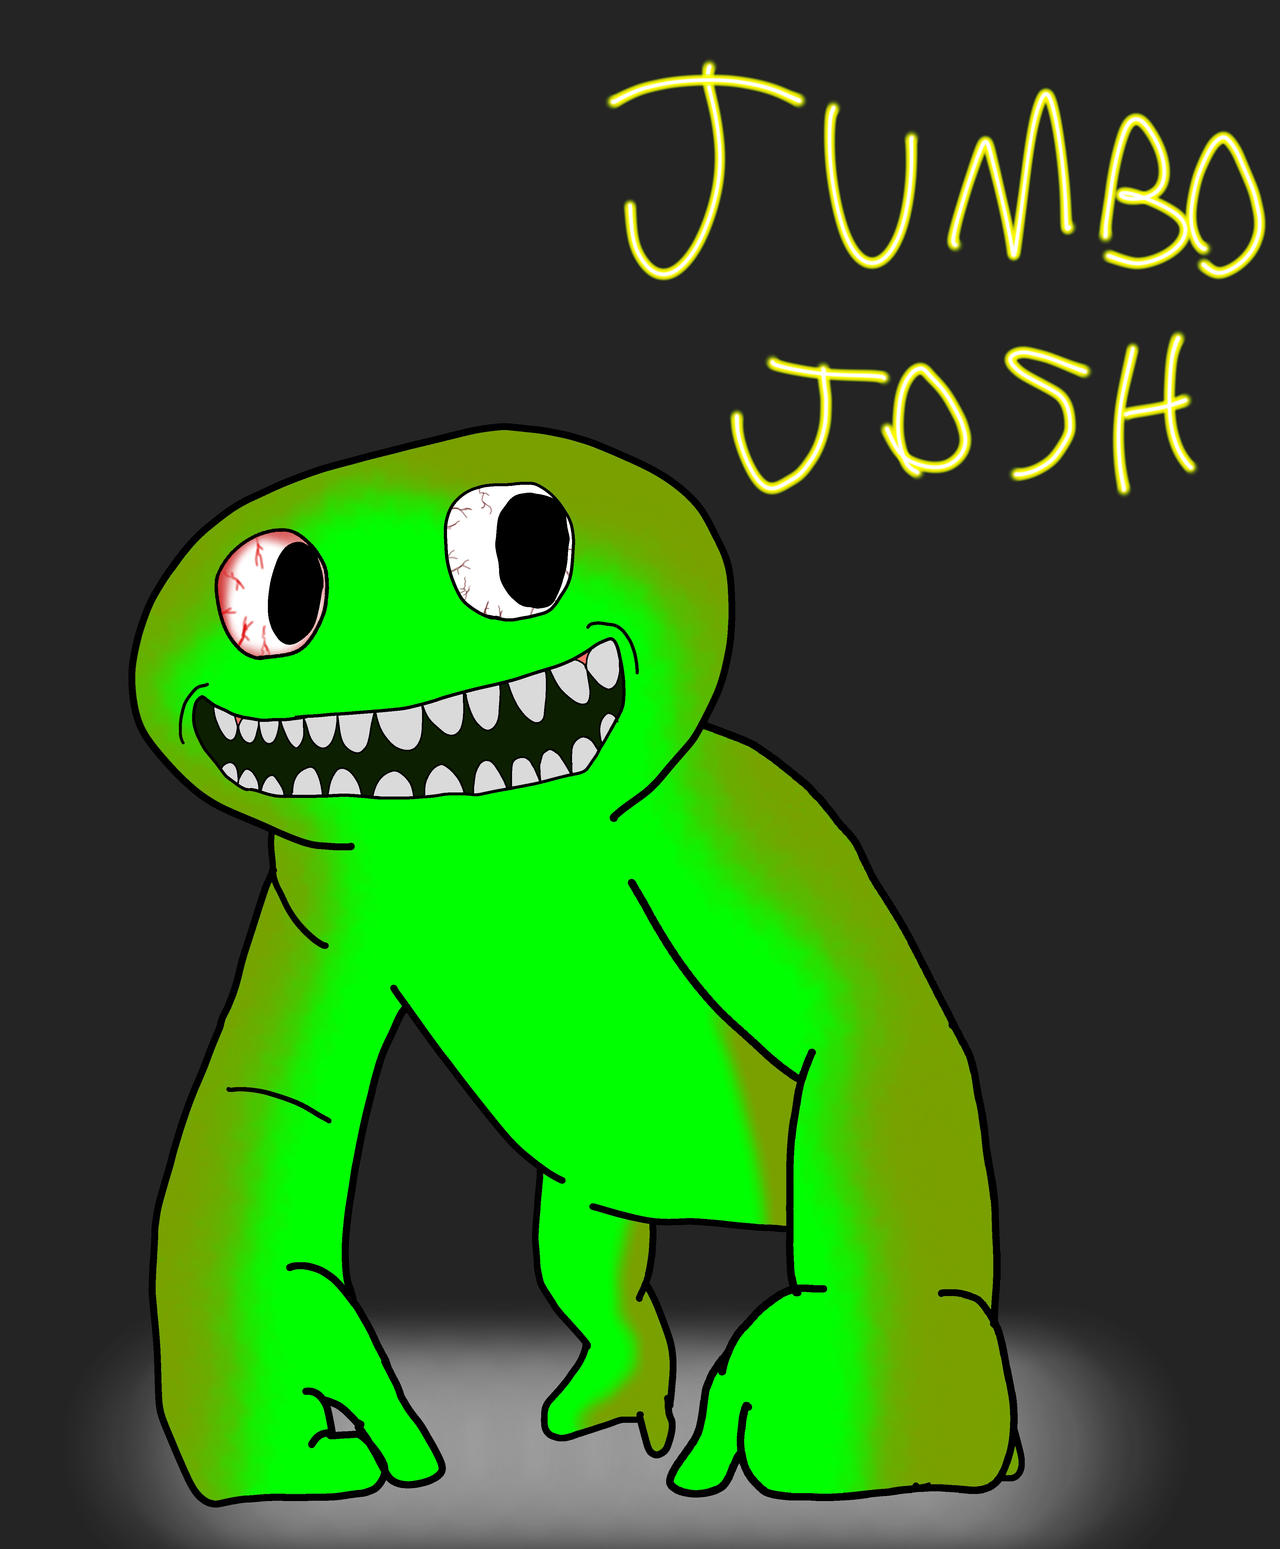 Jumbo Josh by Matt888888888 on DeviantArt